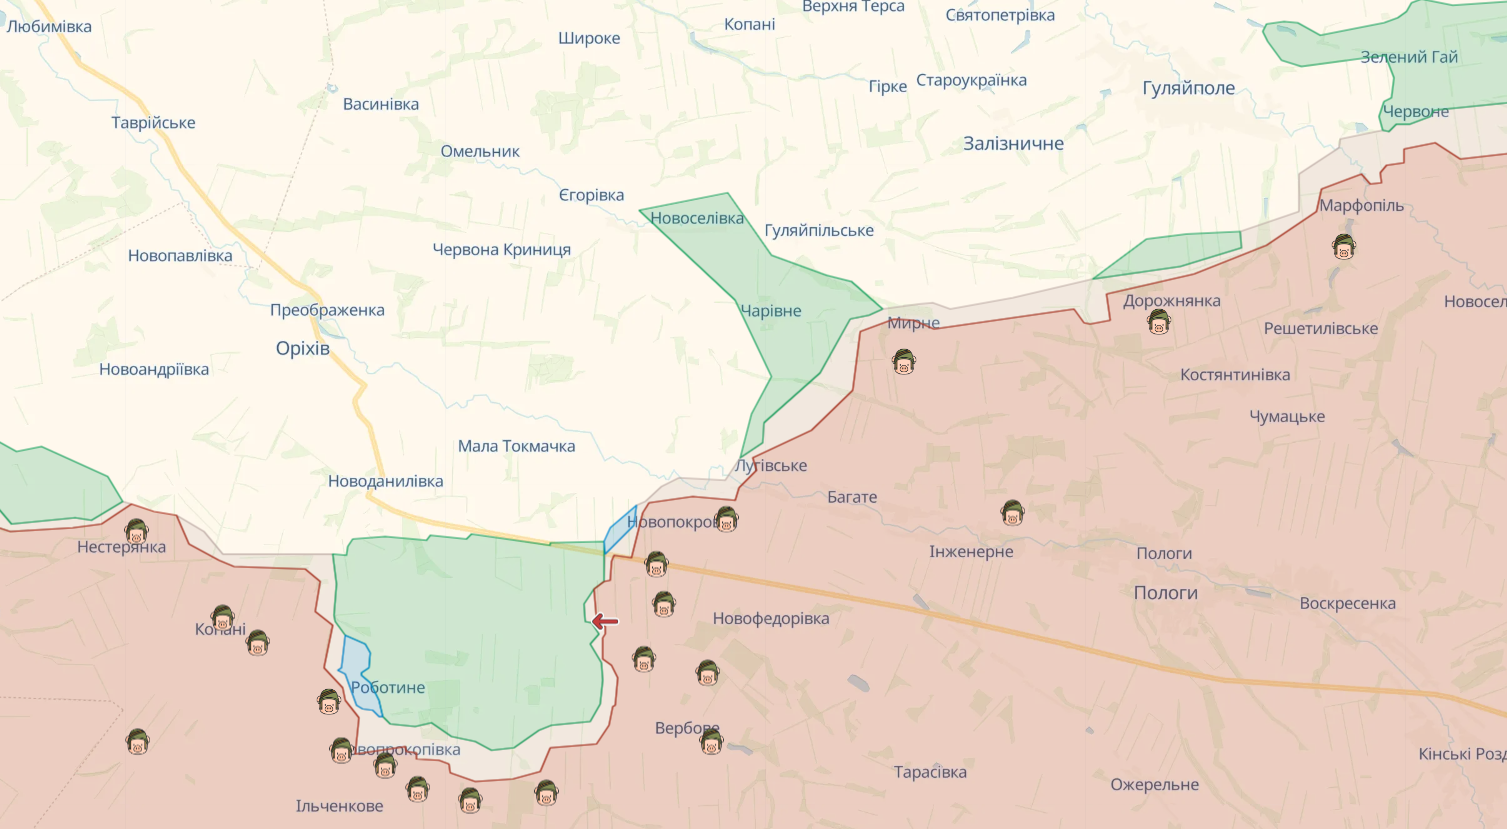 Силы обороны удерживают занятые позиции на левобережье Днепра, за сутки на фронте произошло 97 боевых столкновений – Генштаб